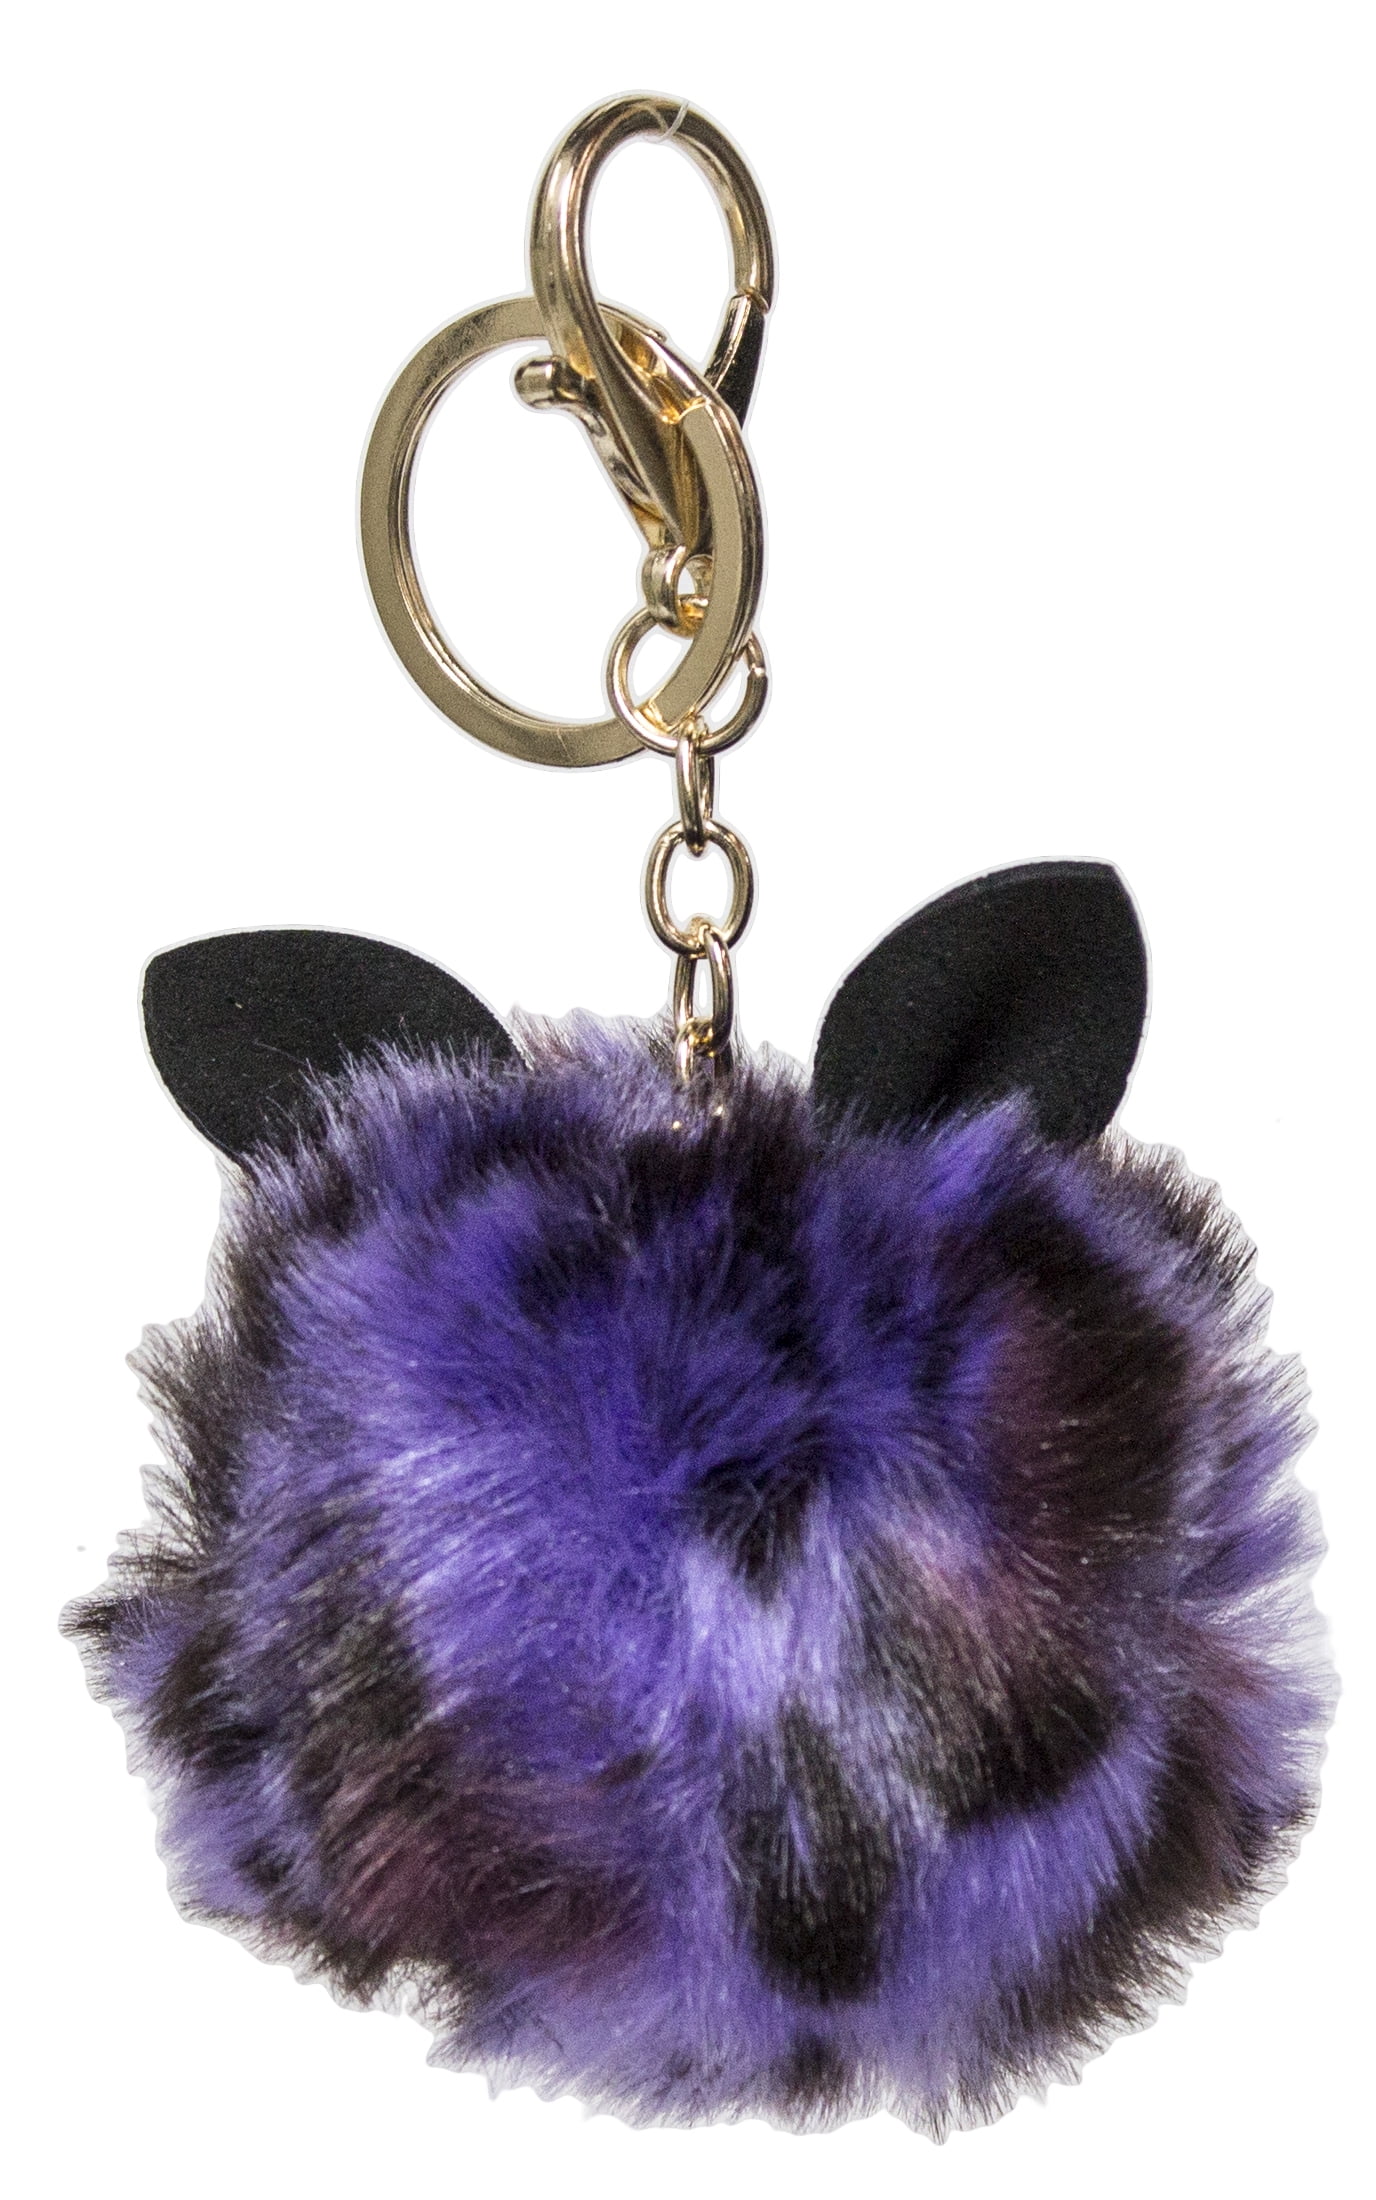 Catify Co Pom Pom Keychain with Cat Ears Gray